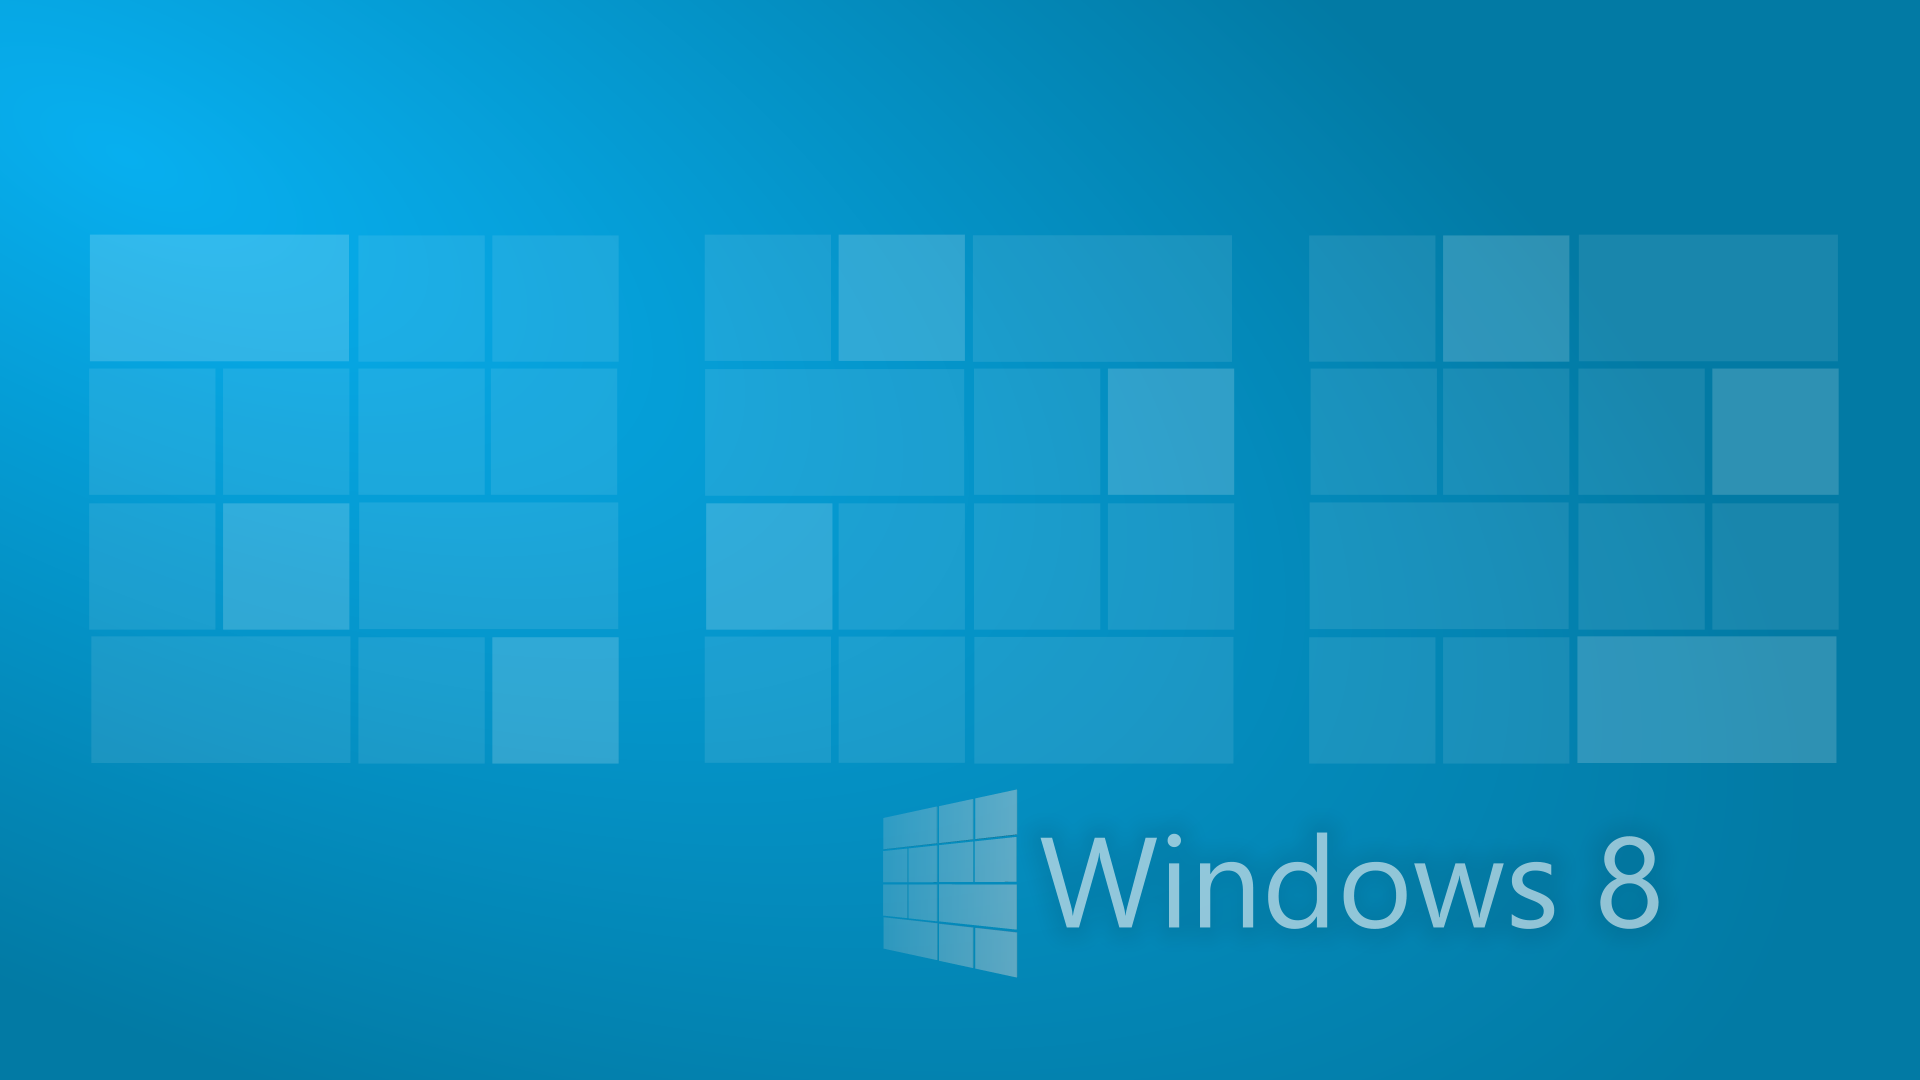 Windows 8 Hd Wallpaper 1920X1080 1788338